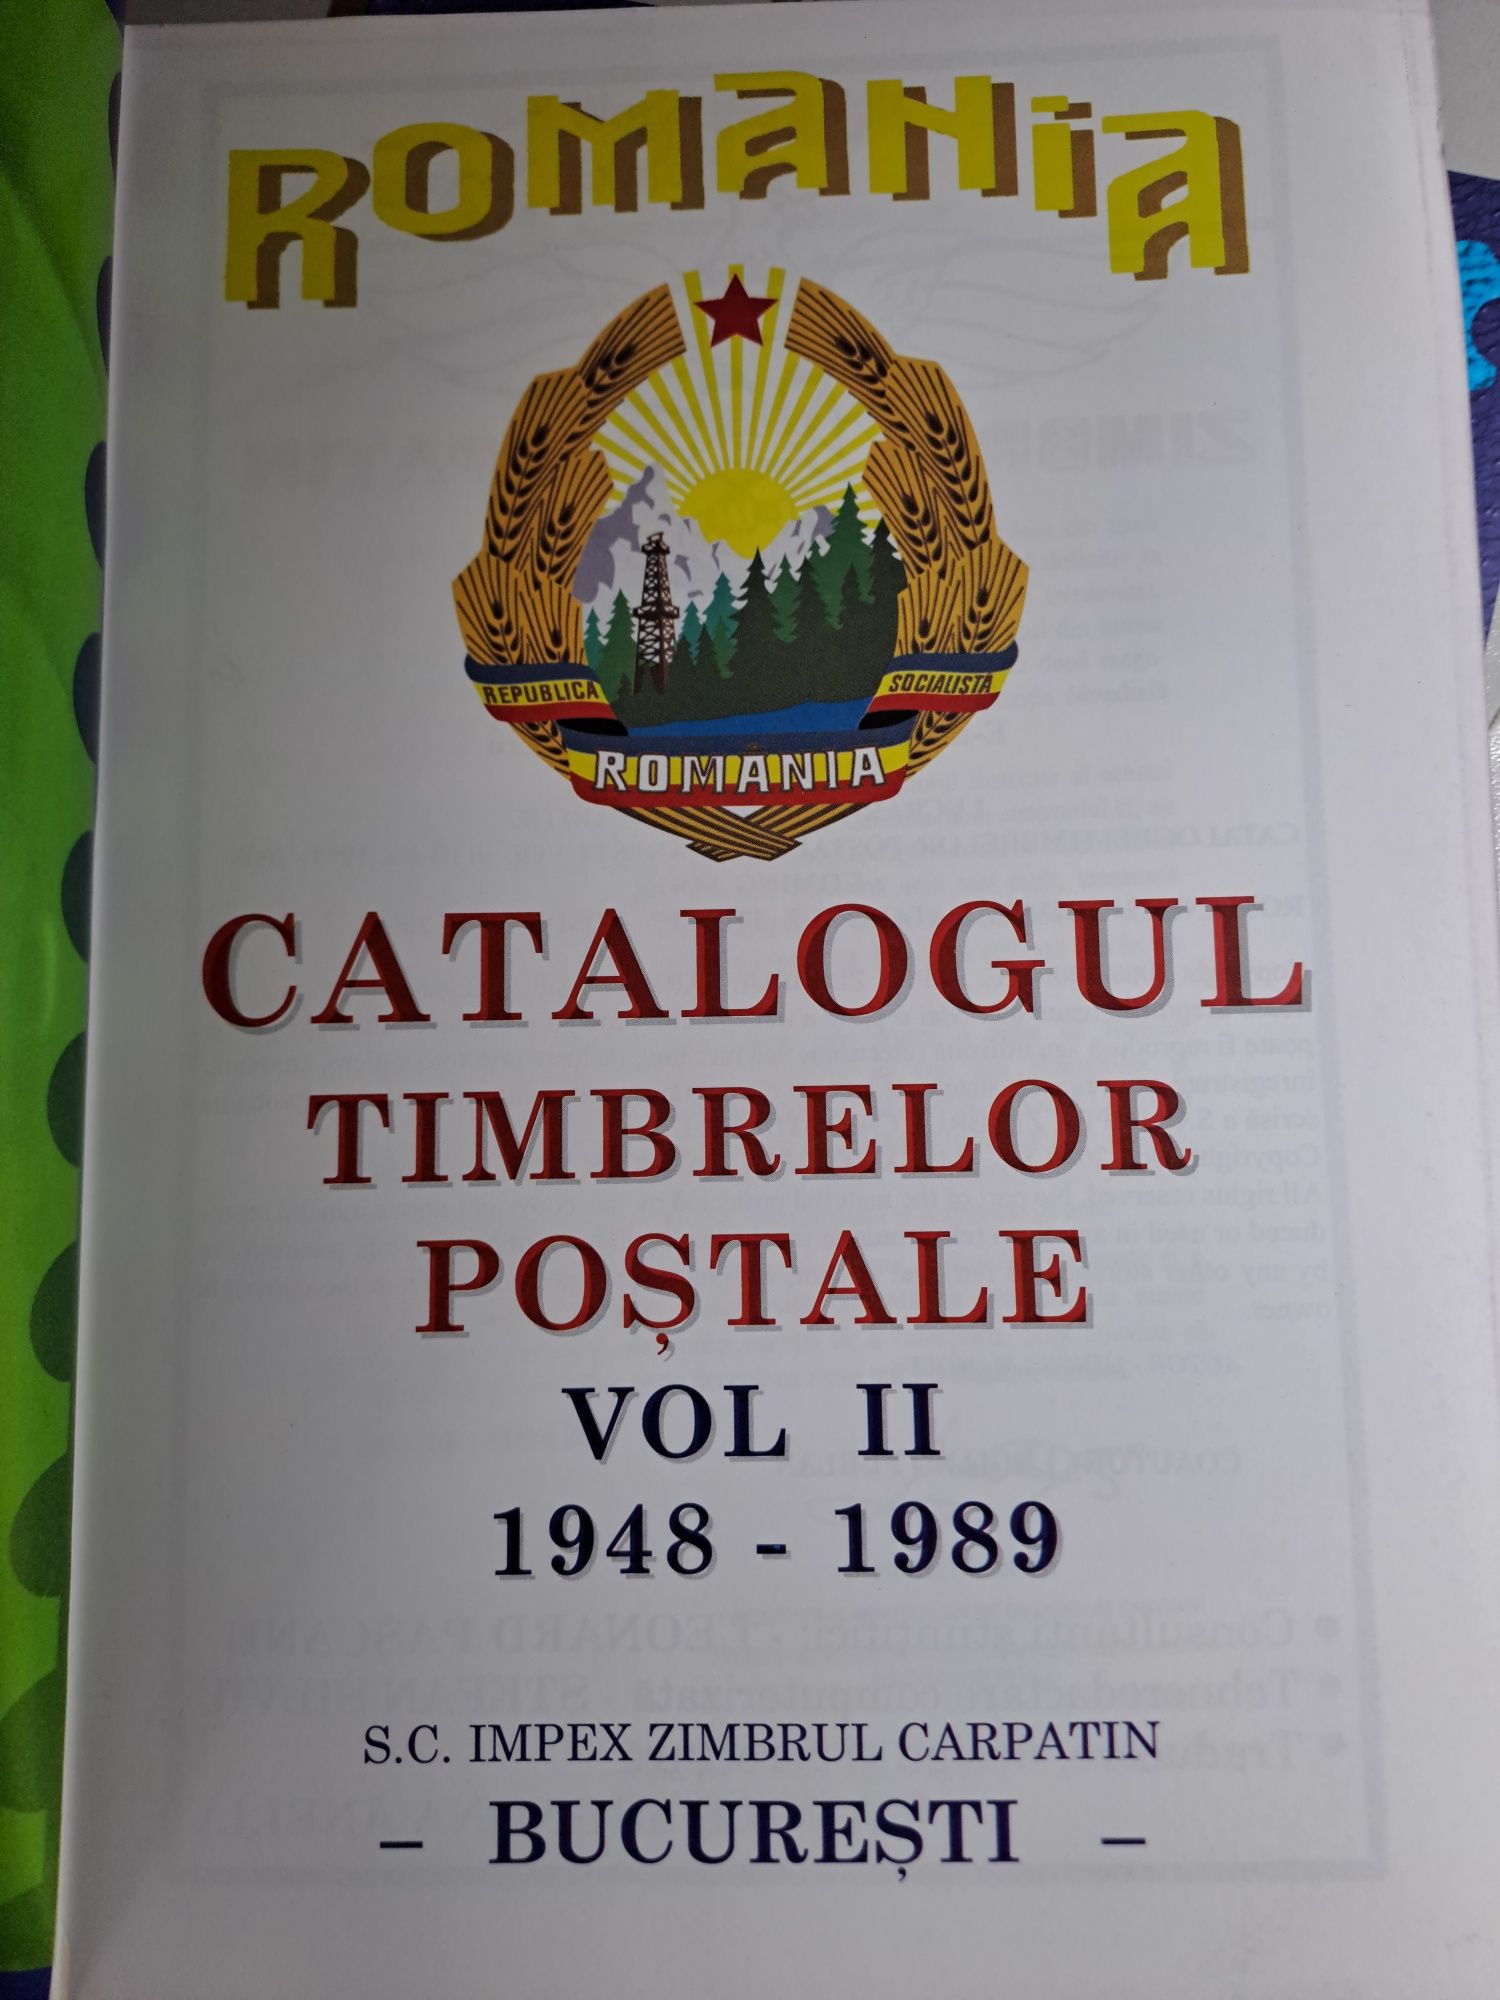 Catalogul Timbrelor Poștale Romanesti, Volumul ll, 1948 - 1989